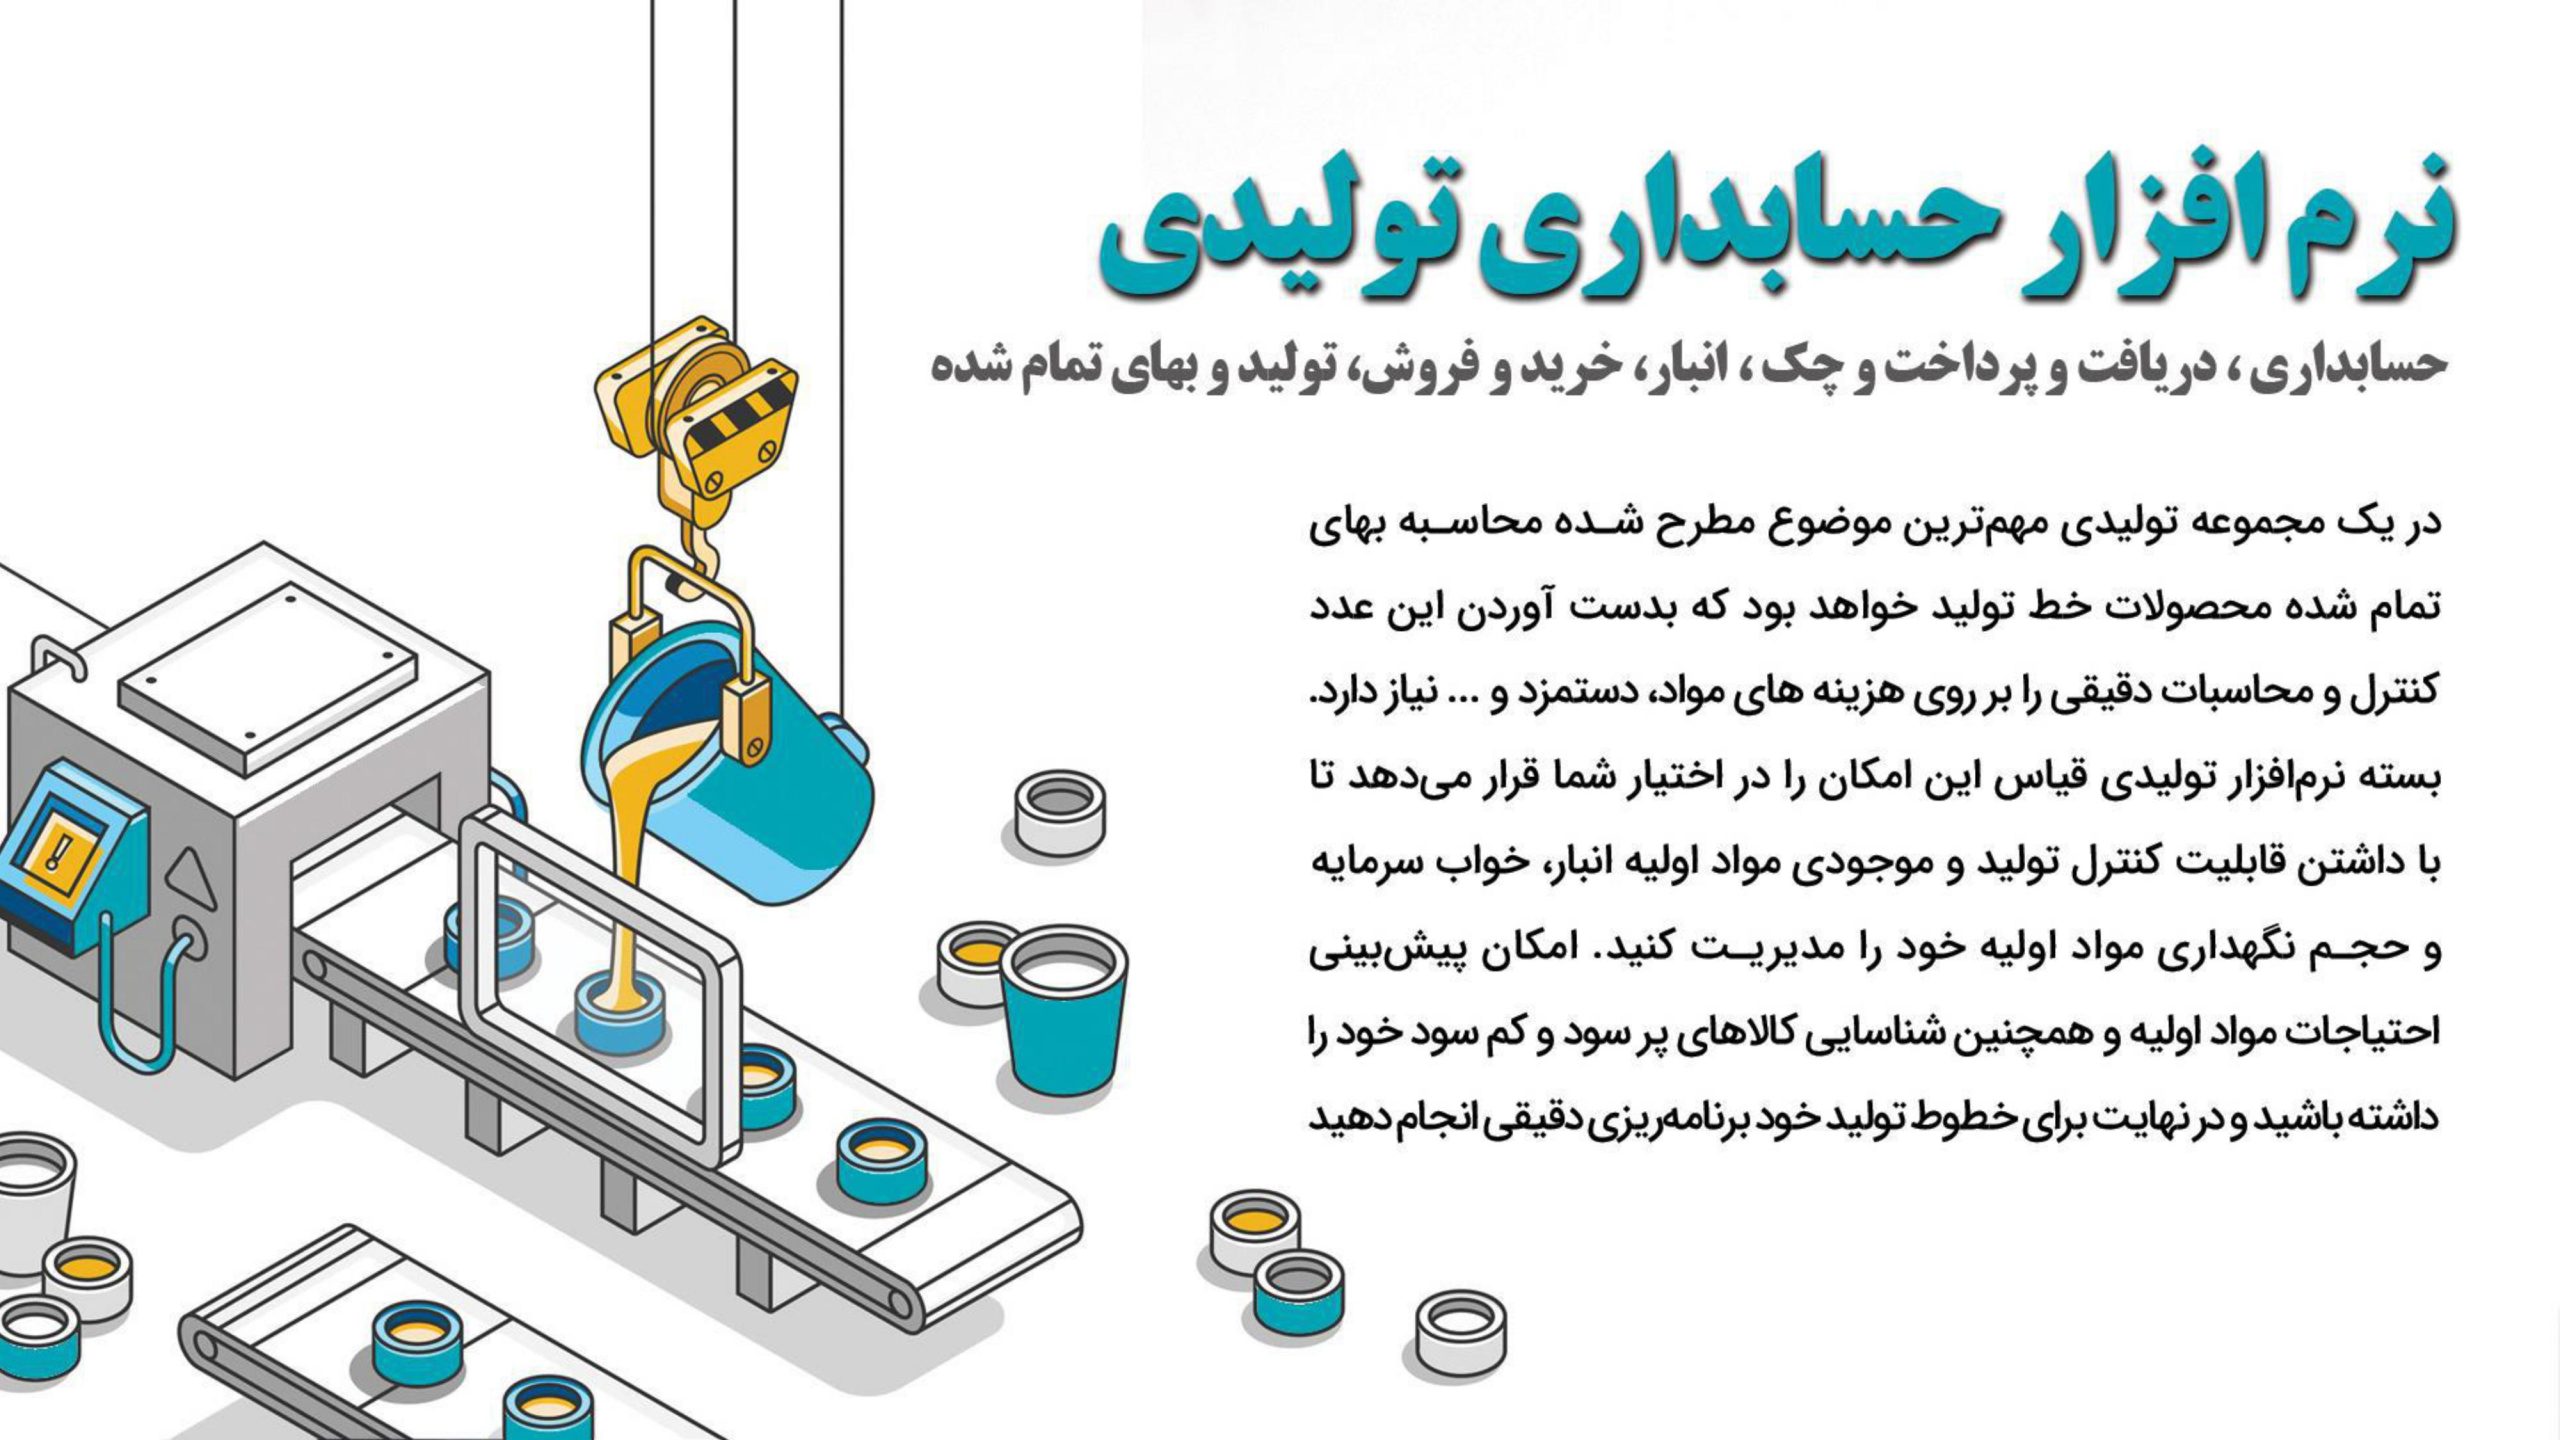 نرم افزار حسابداری تولیدی قیاس – آذر حسابان – تبریز